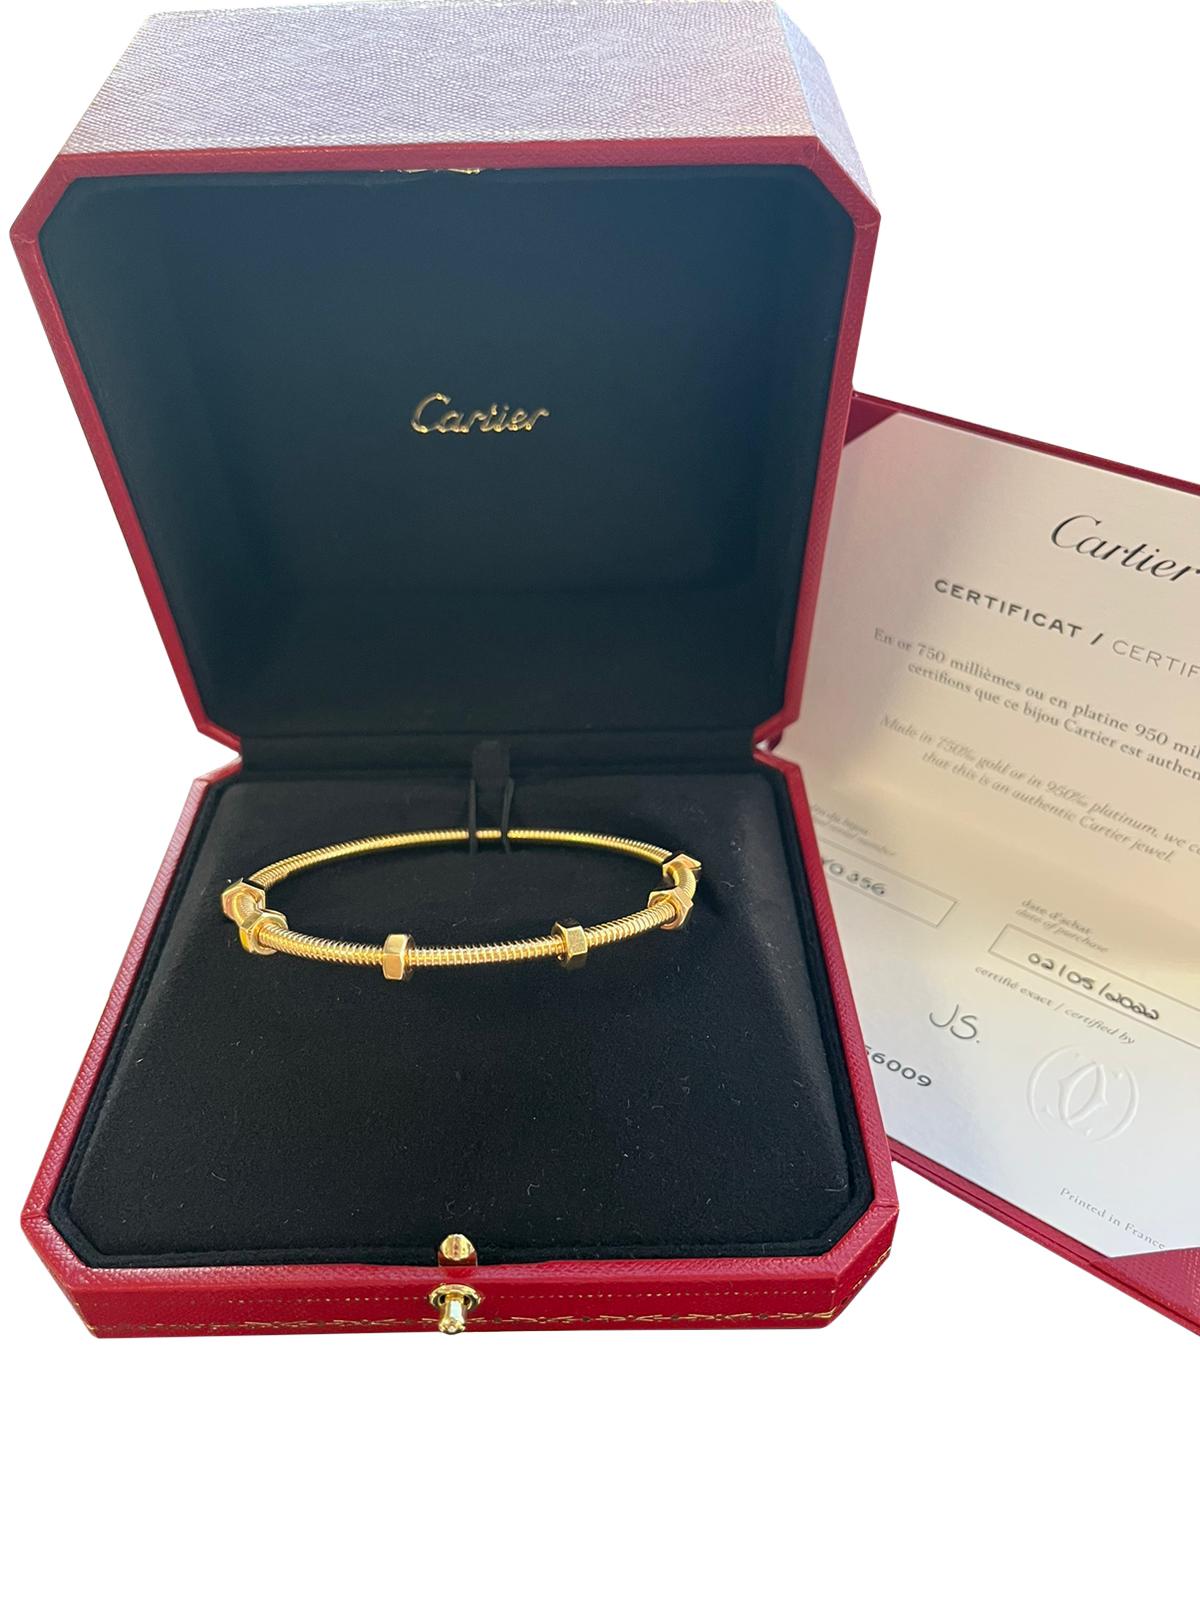 Cartier Ecrou De Cartier 18K Yellow Gold Size 20 Bangle Bracelet 1